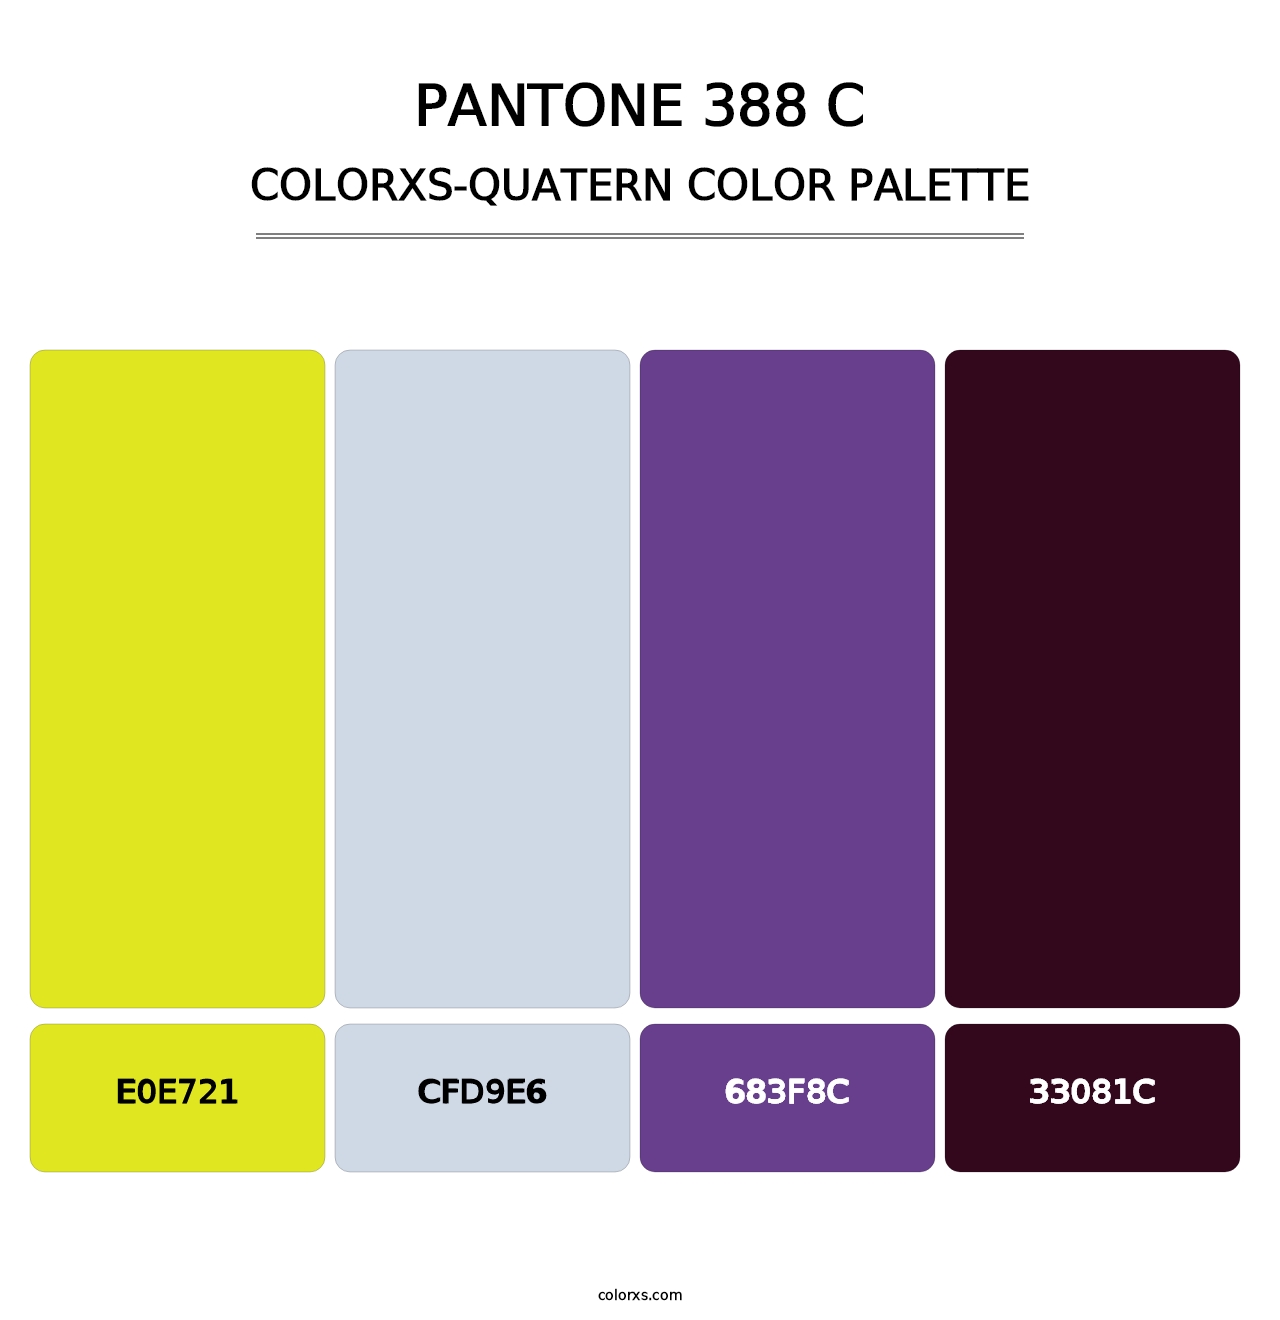 PANTONE 388 C - Colorxs Quatern Palette